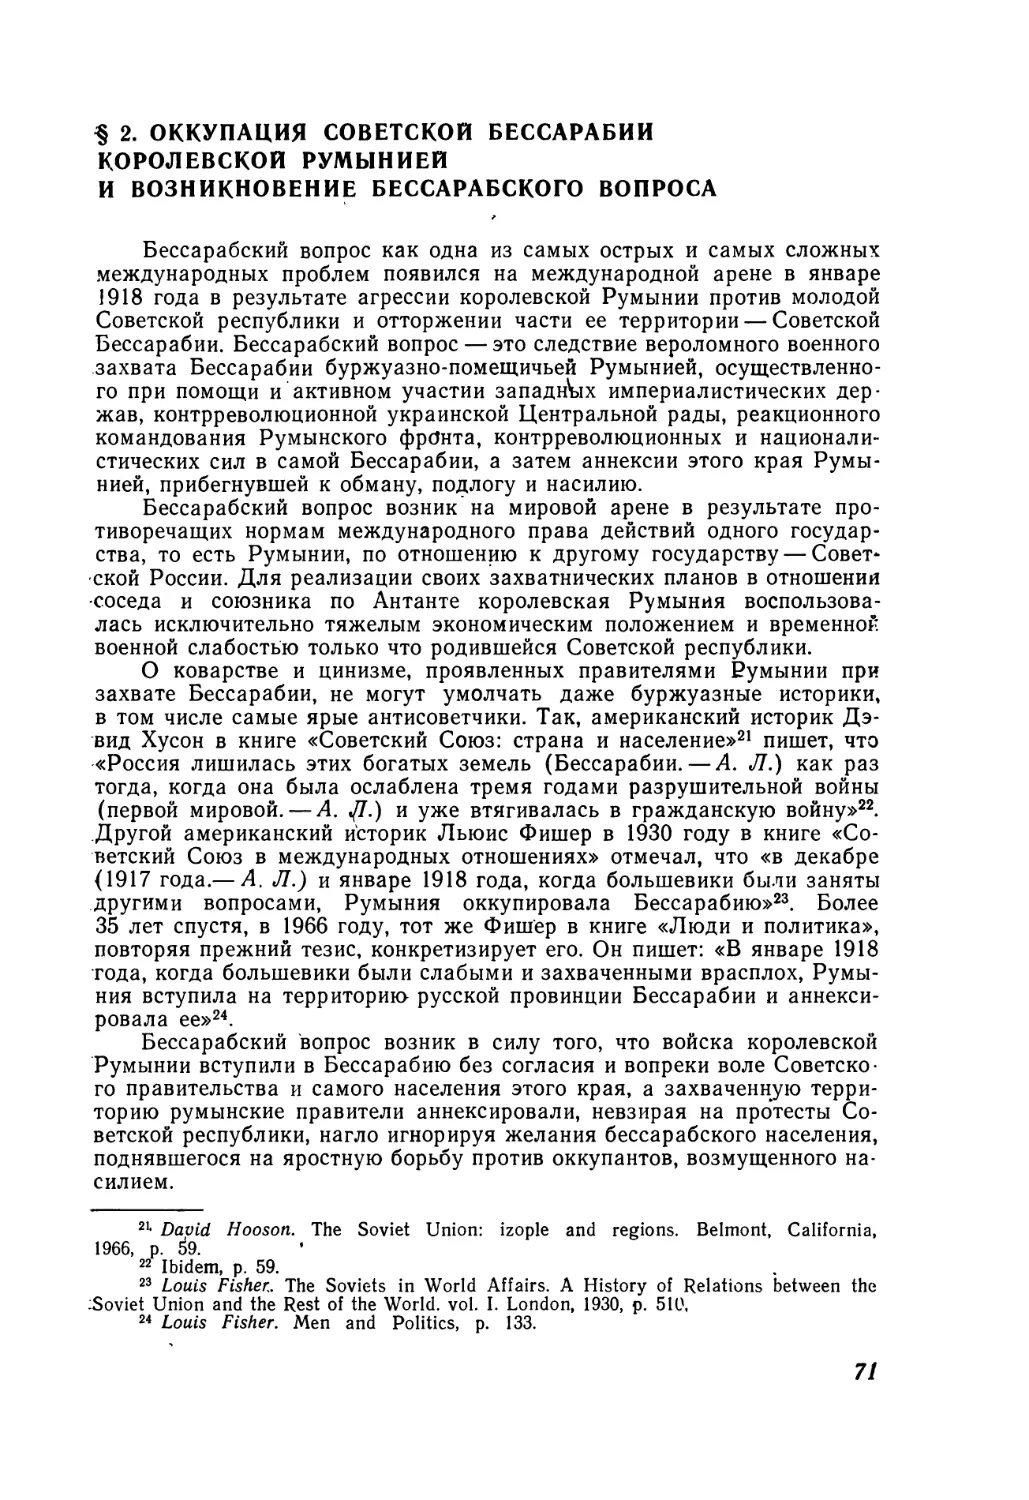 § 2. Оккупация Советской Бессарабии королевской Румынией и возникновение бессарабского вопроса